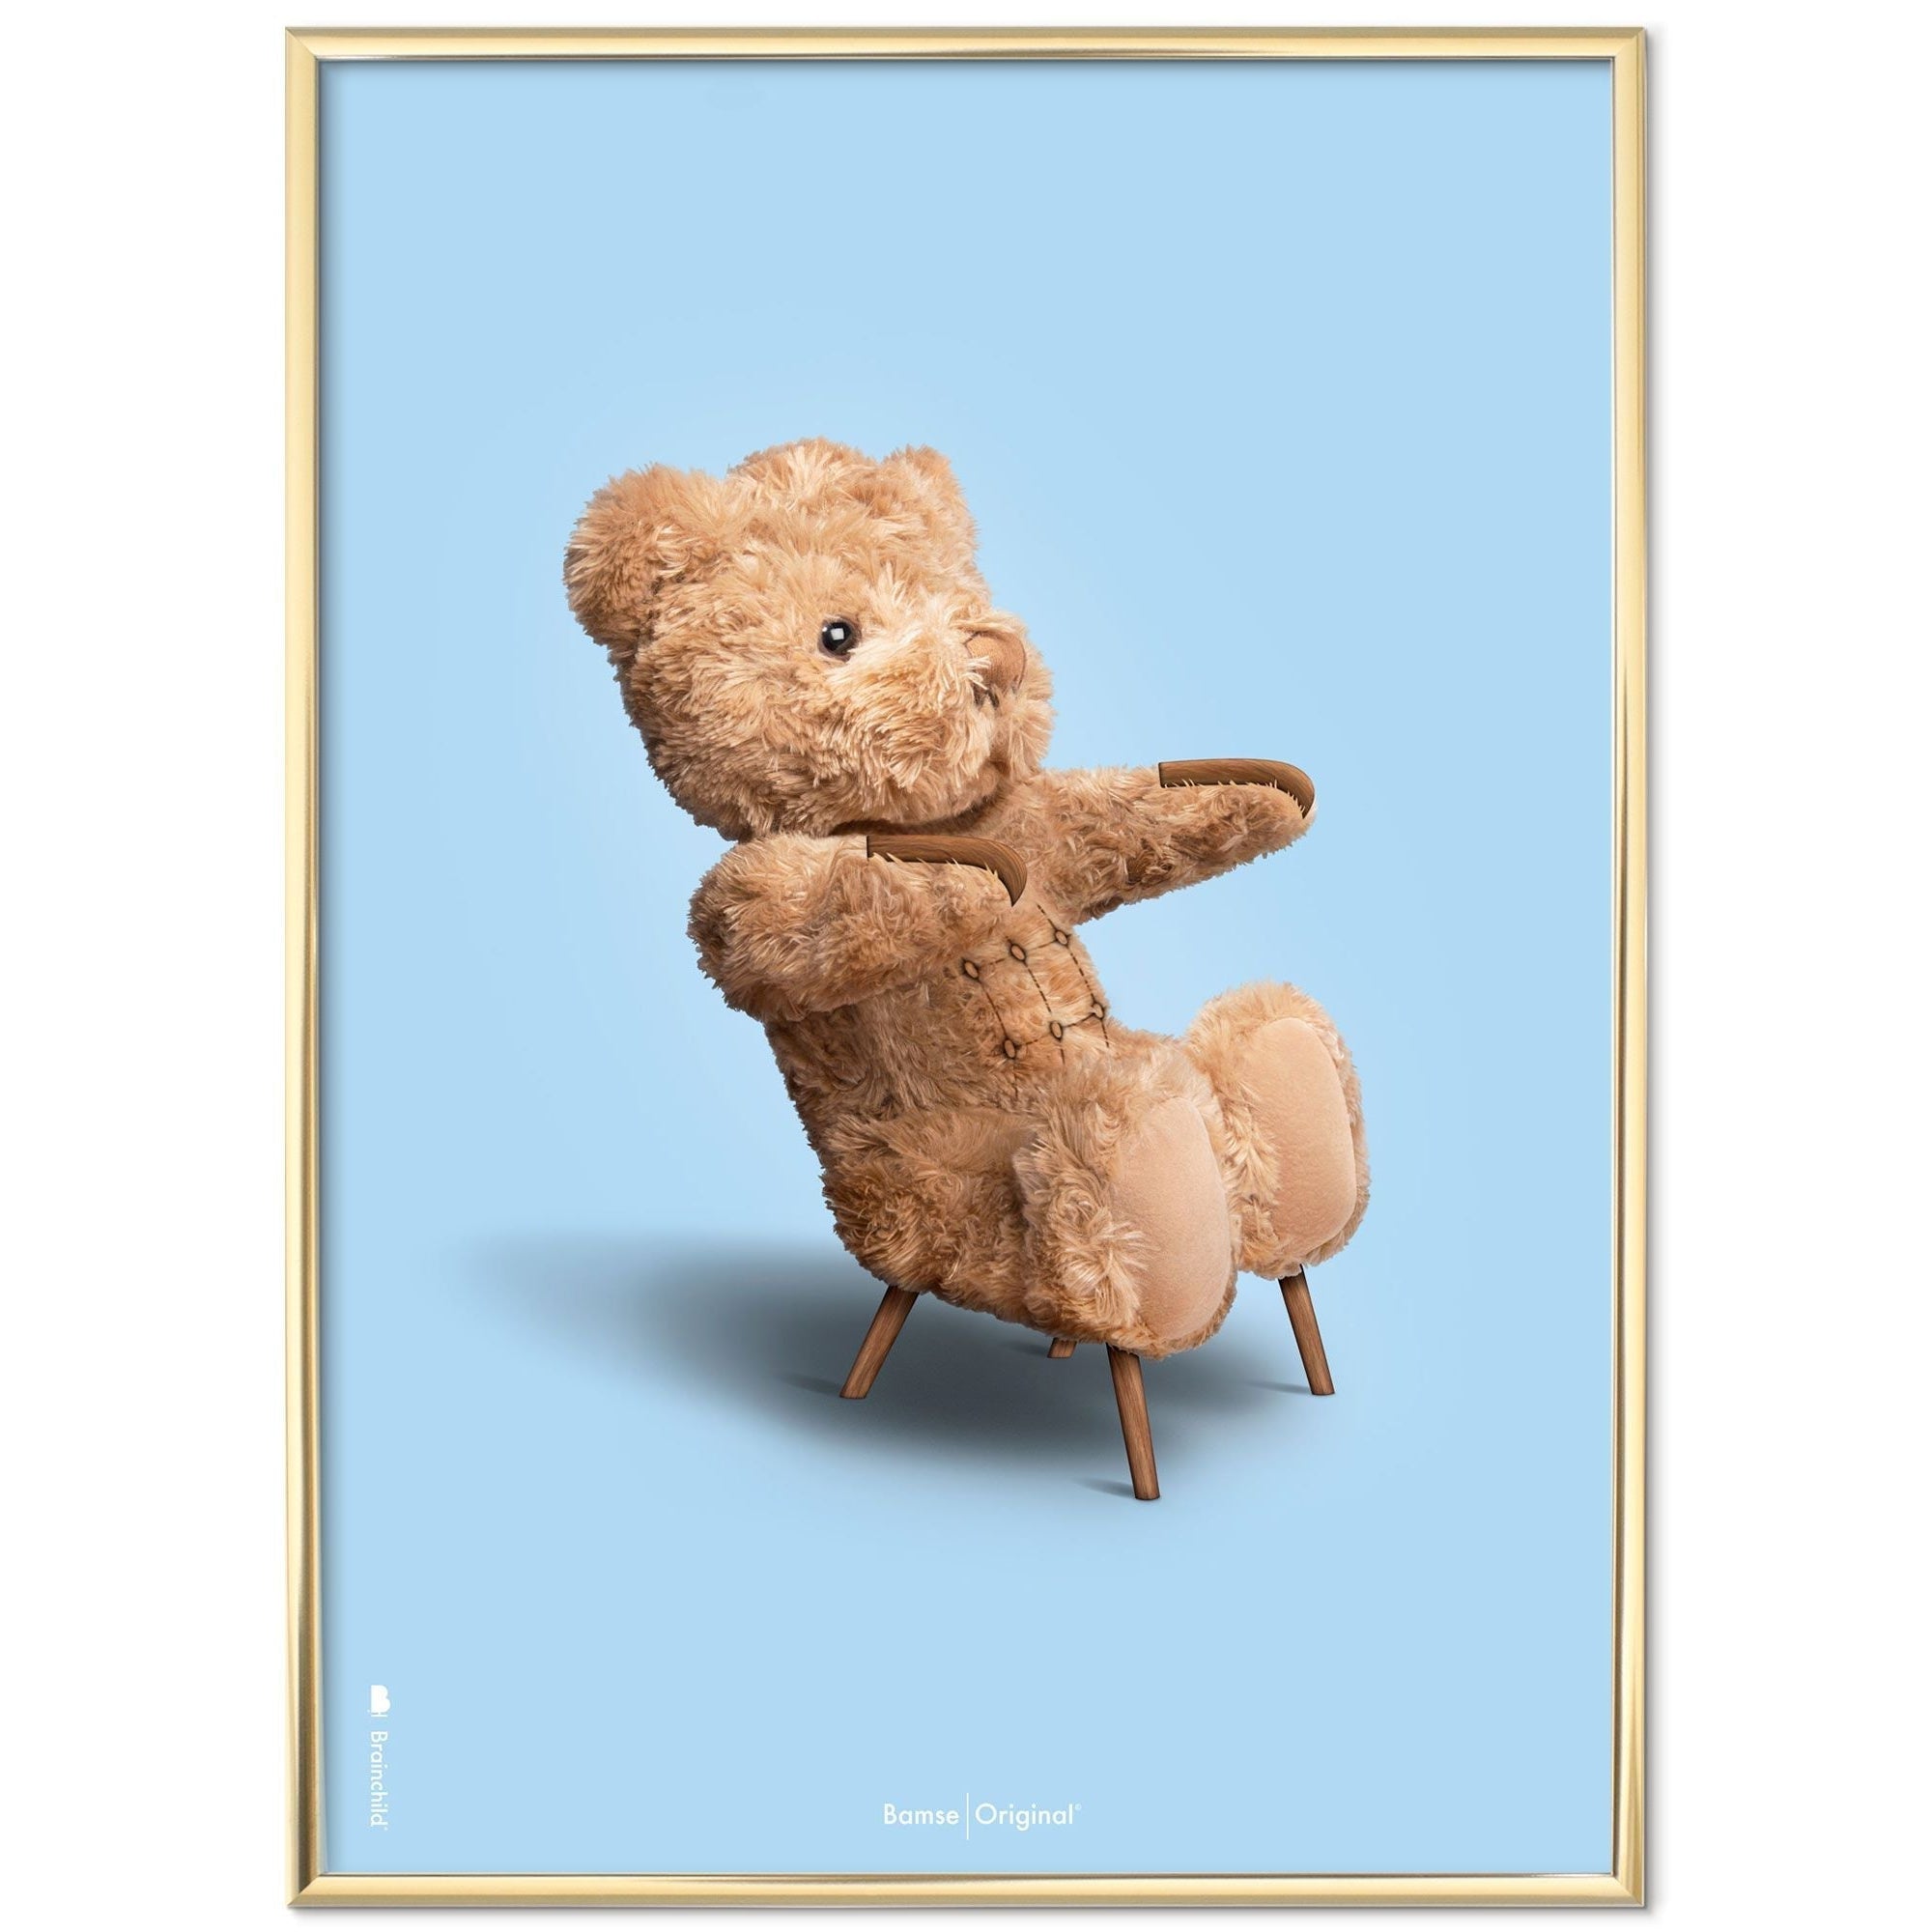 Brainchild Teddybär Classic Poster Messingfarbener Rahmen 30x40 Cm, Hellblauer Hintergrund